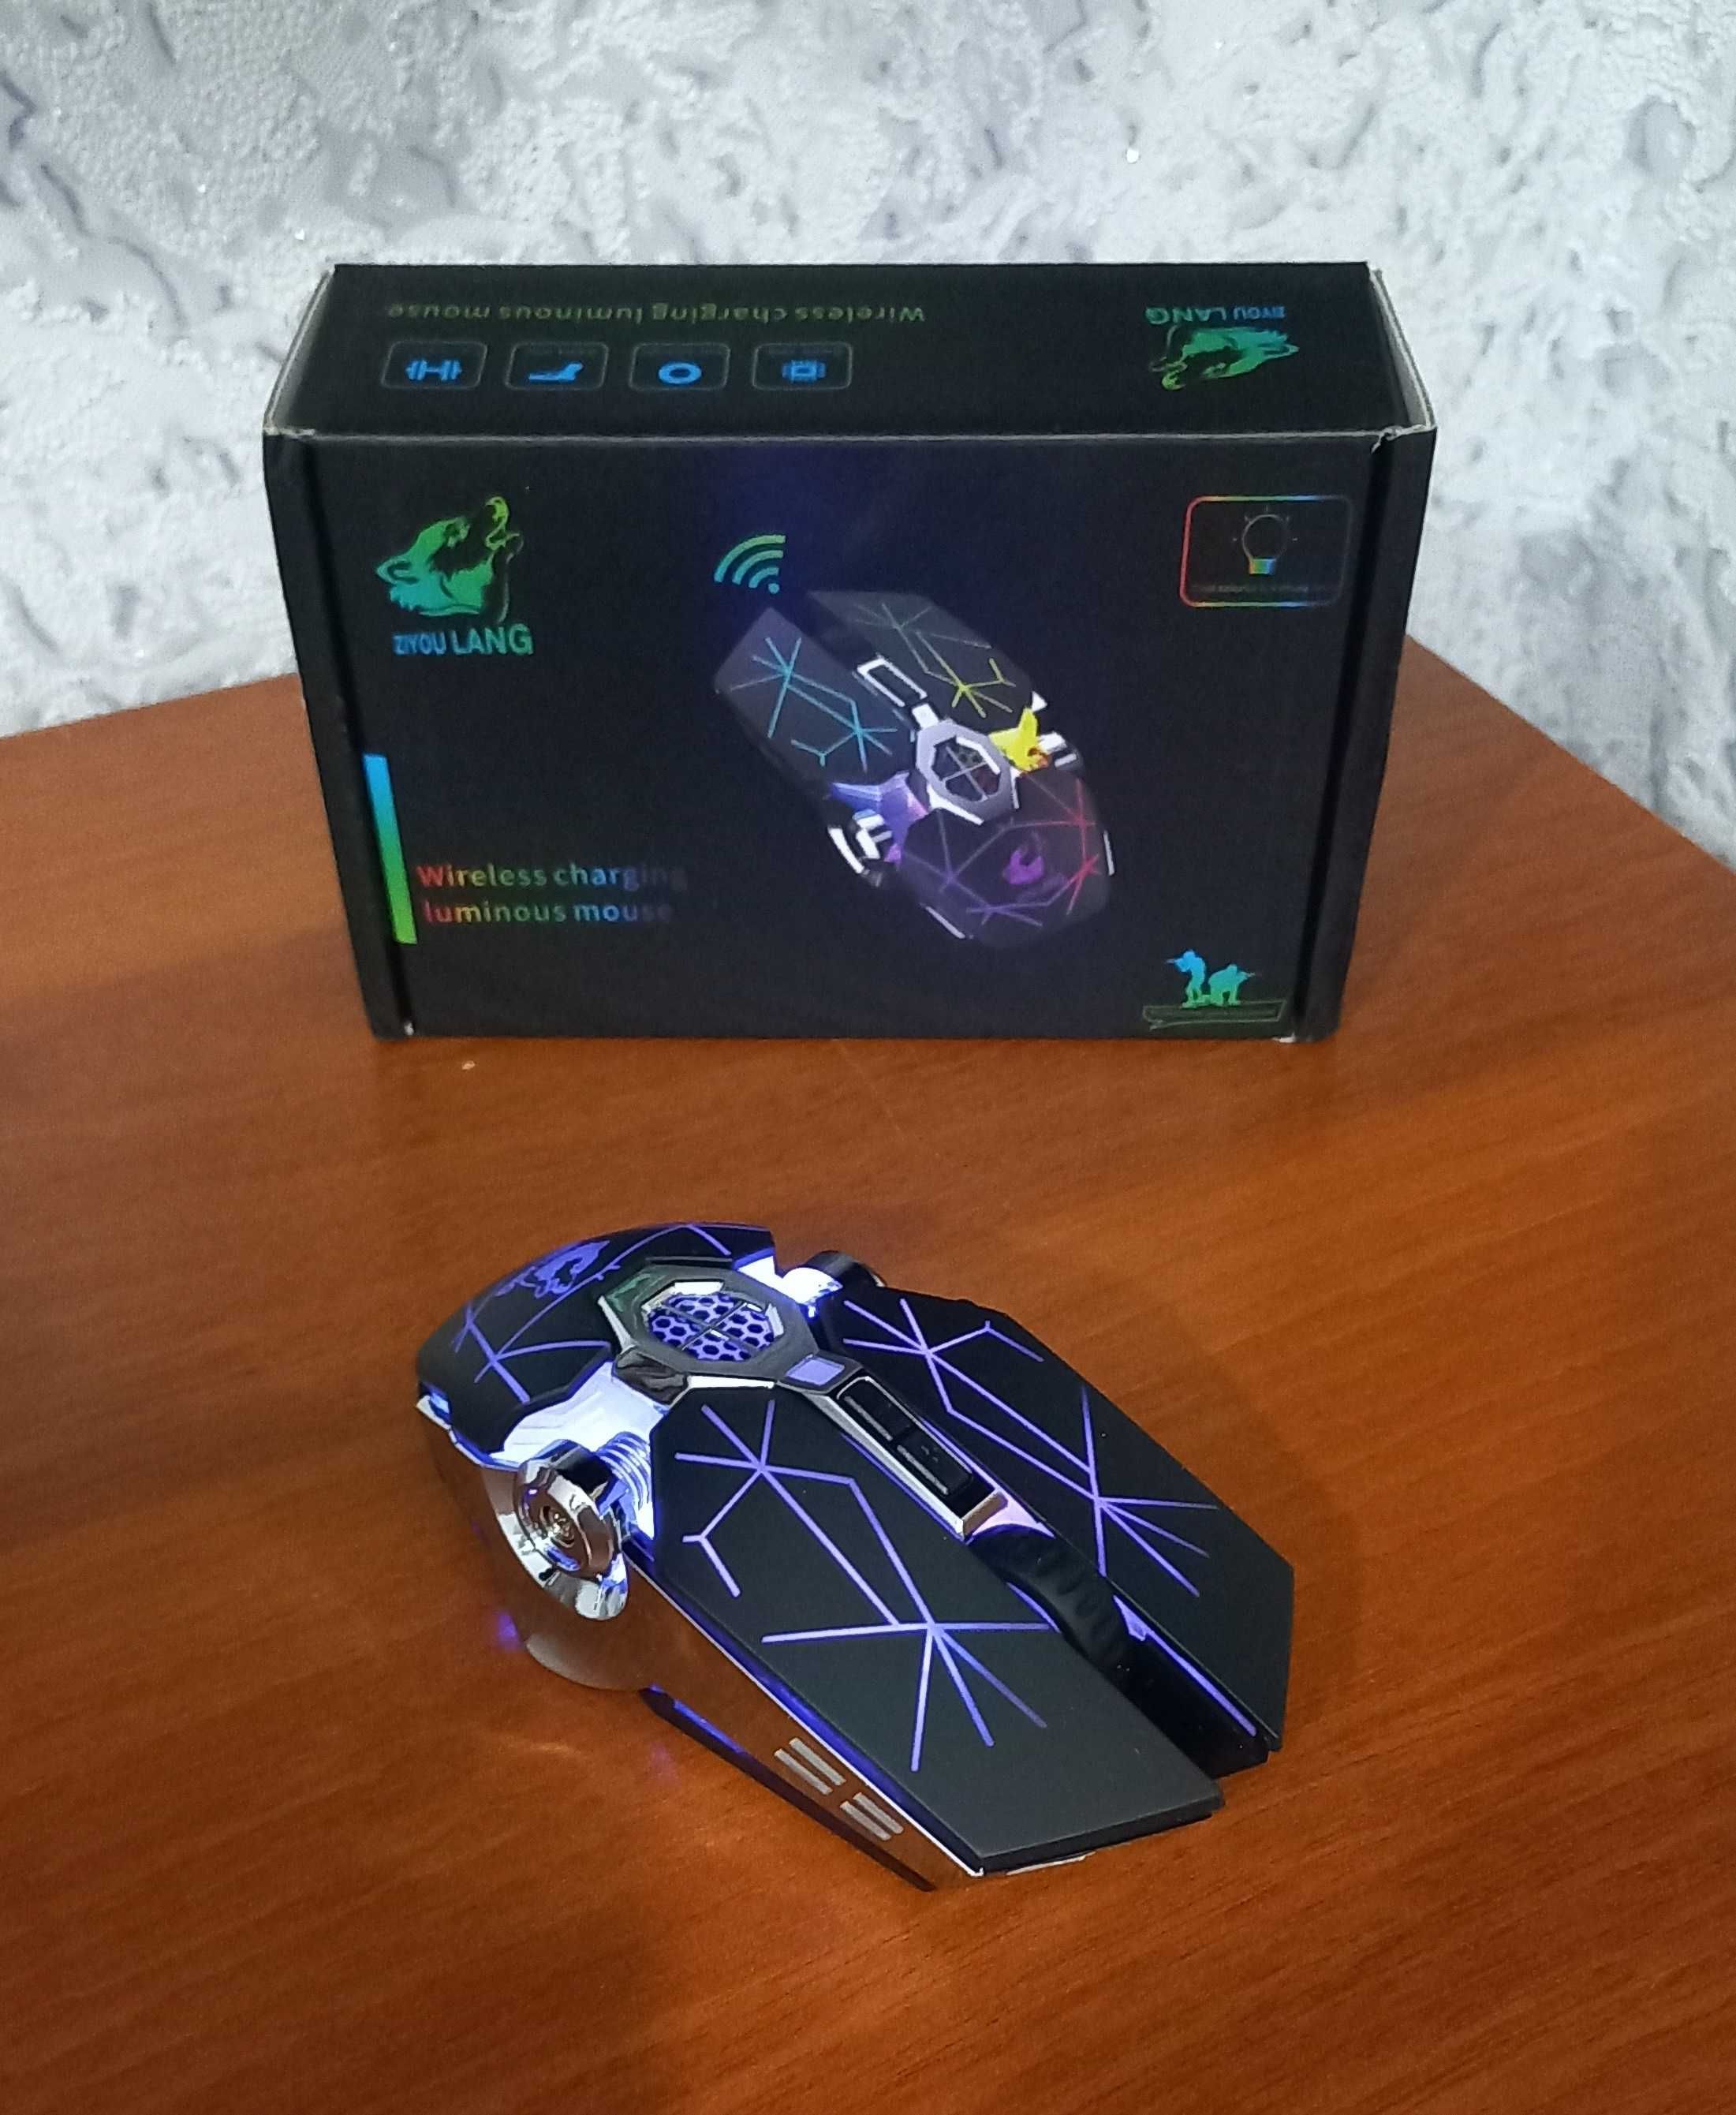 Беспроводная игровая мышь ZIYOU LANG X13 (бесшумная с RGB)